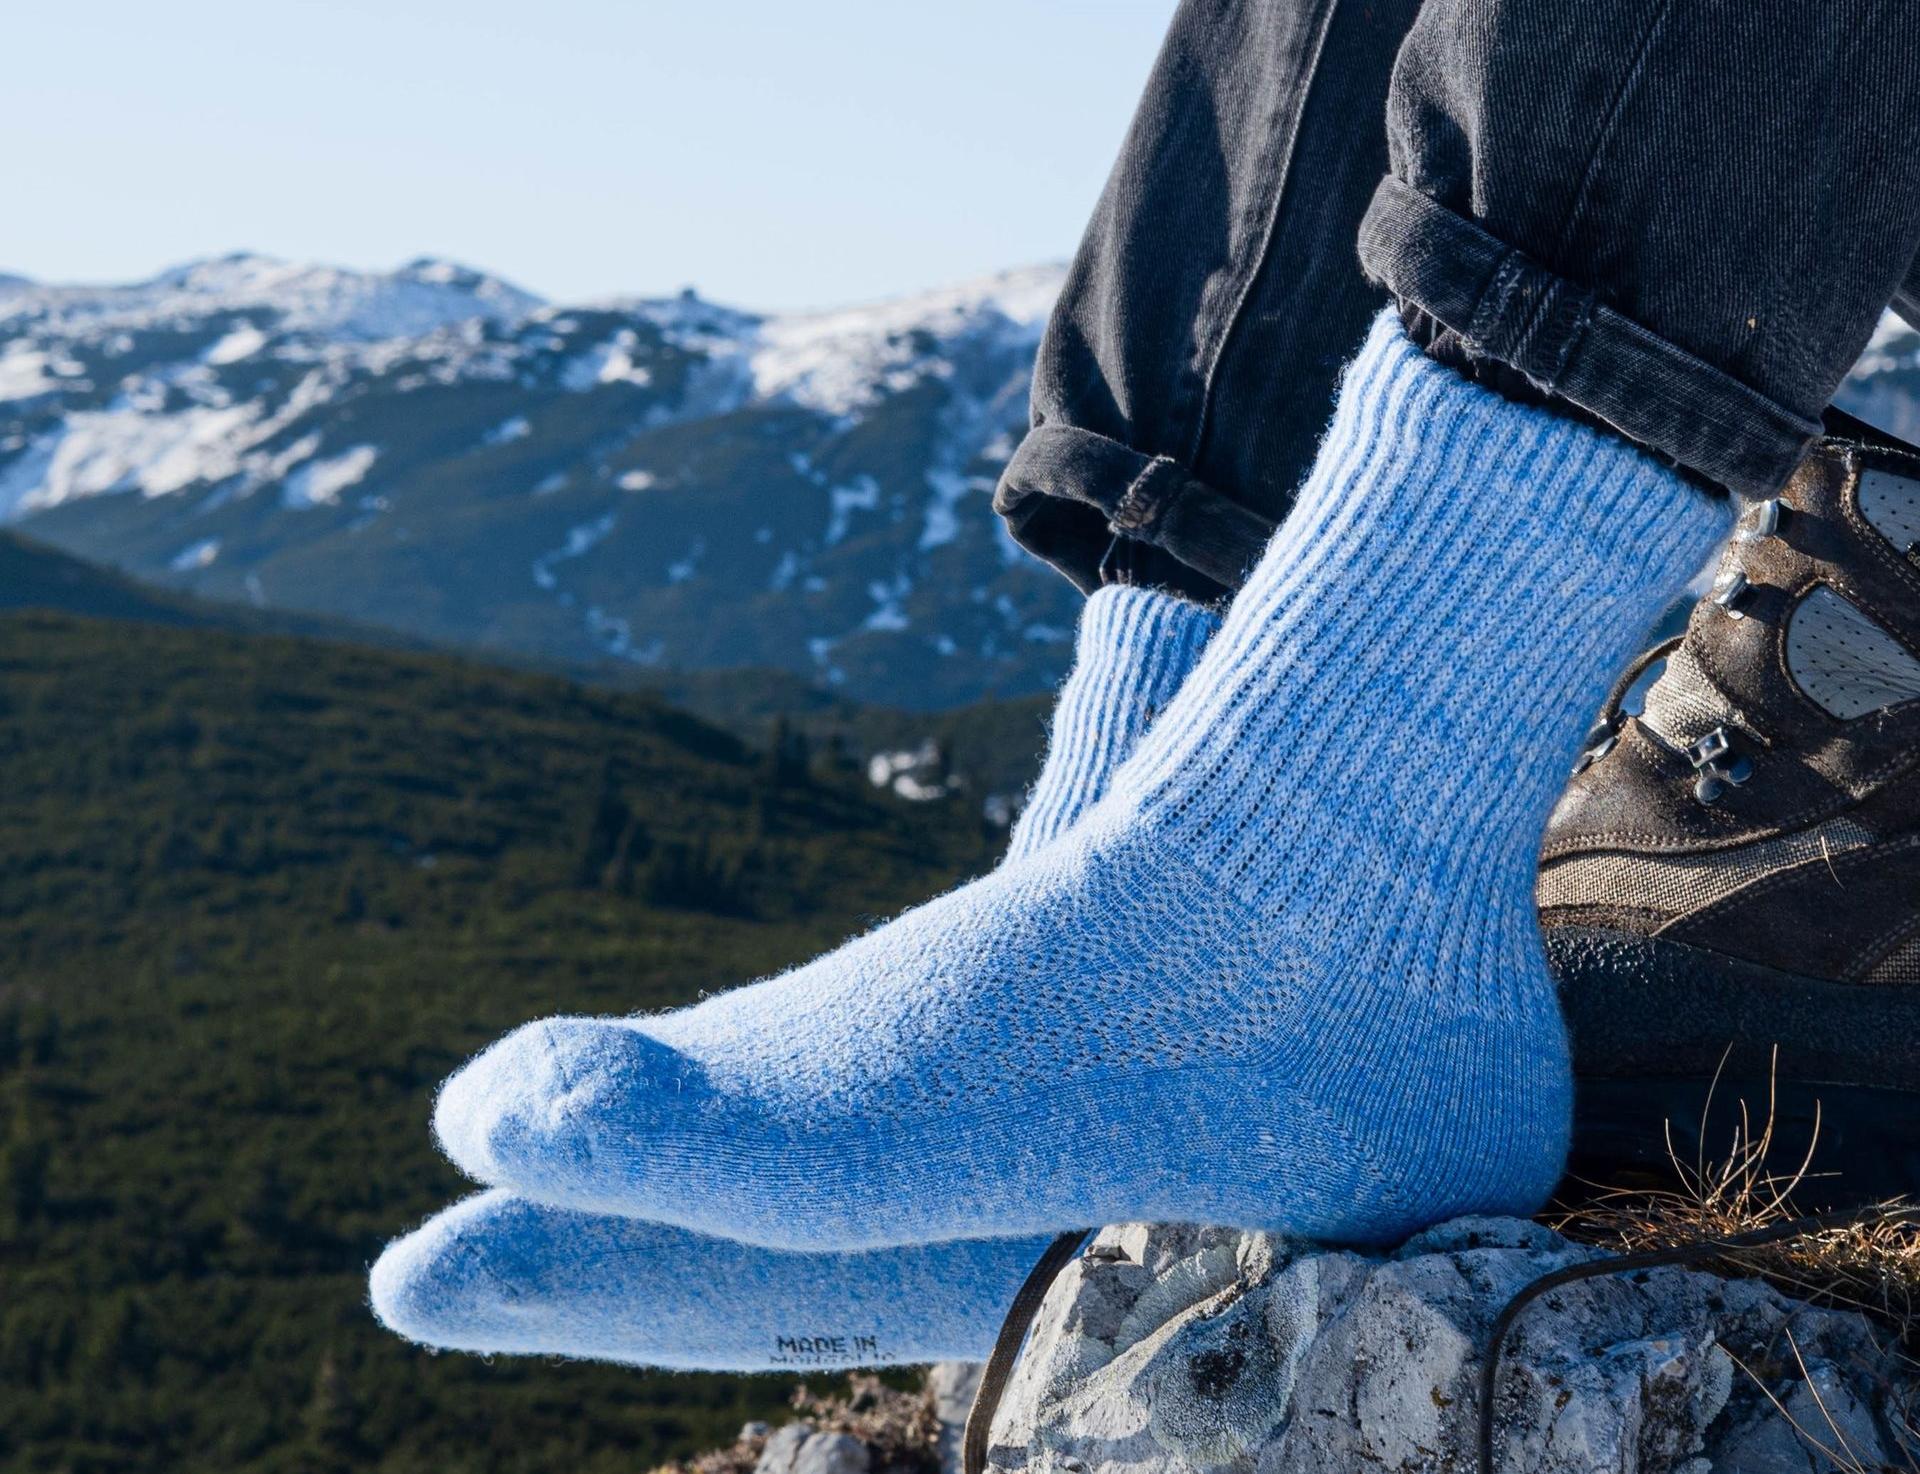 Modell trägt himmelblaue Socken aus Schafwolle undim Hintergrund ist eine Berglandschaft zu sehen.